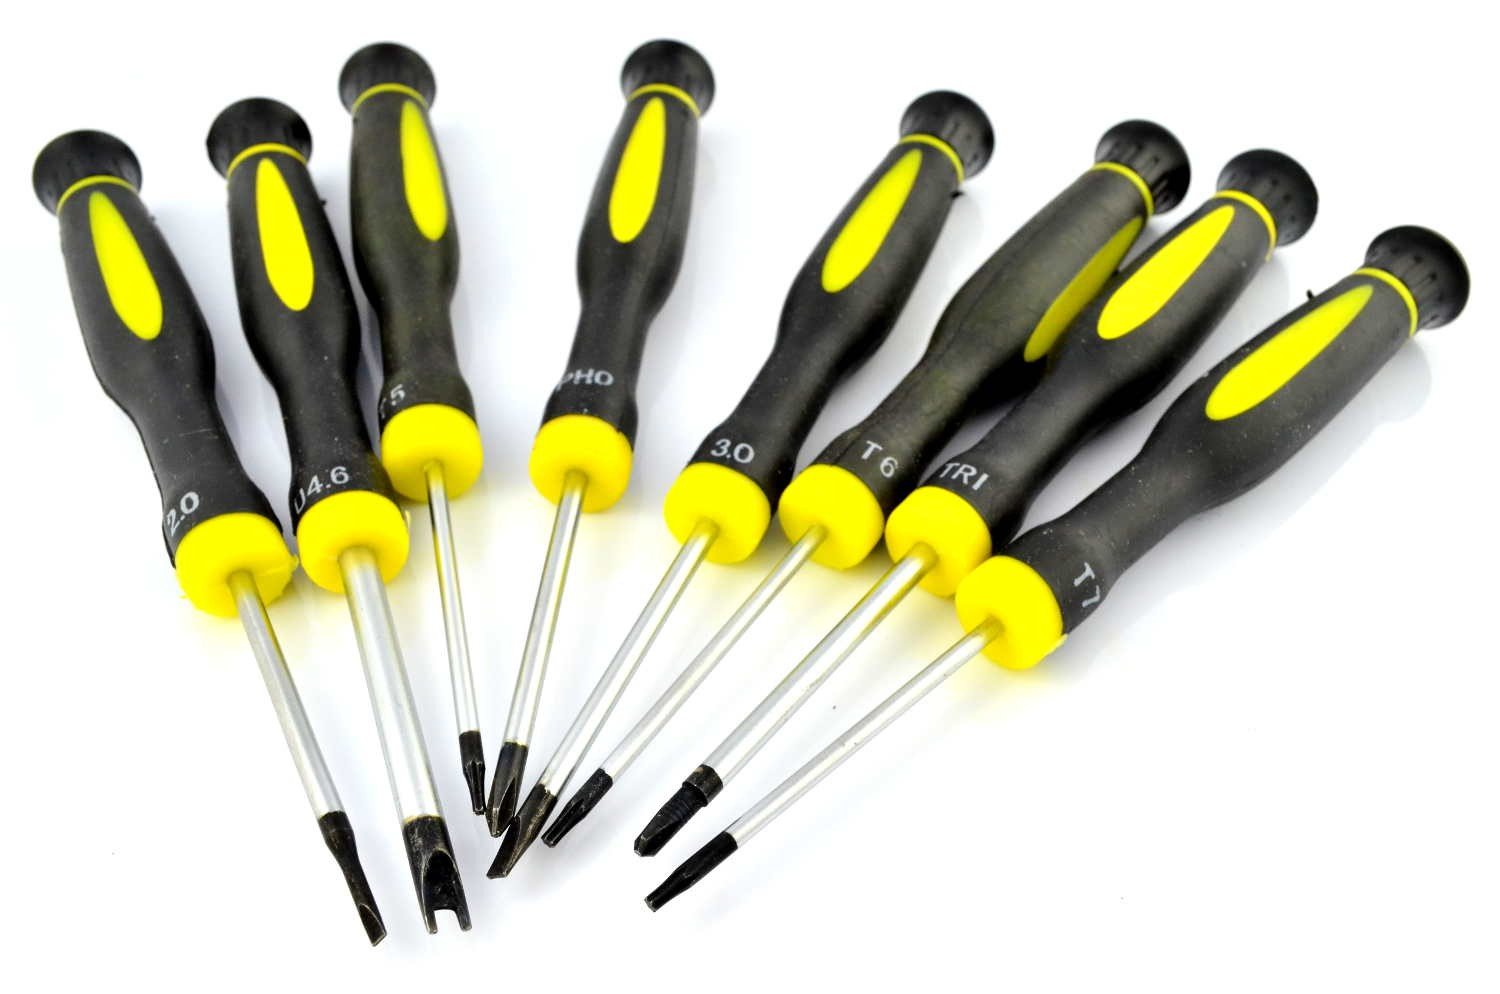 T8 screwdriver set